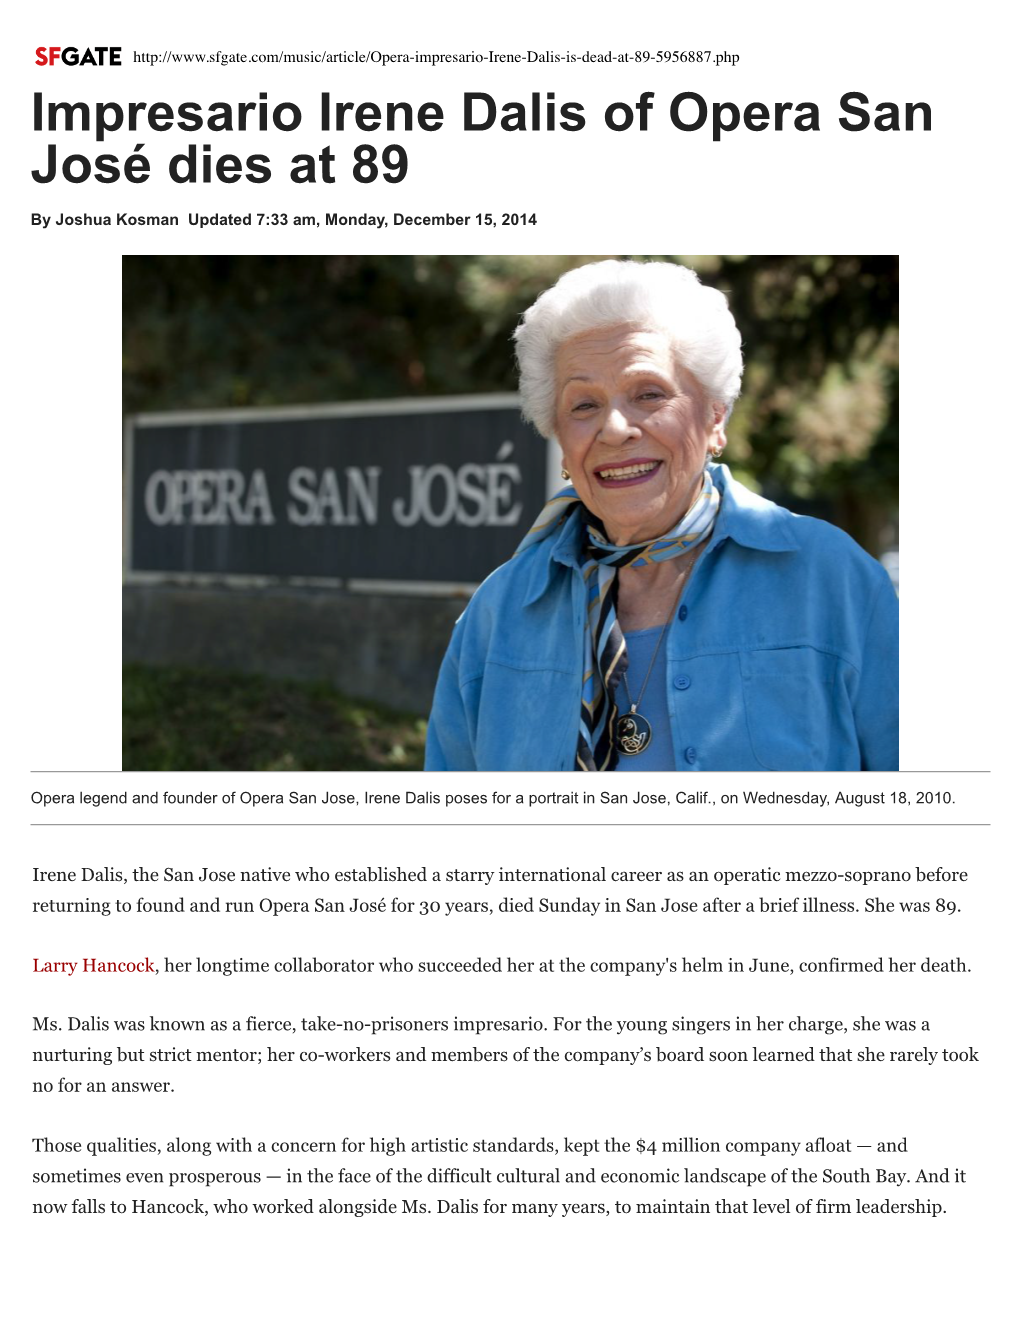 Impresario Irene Dalis of Opera San José Dies at 89